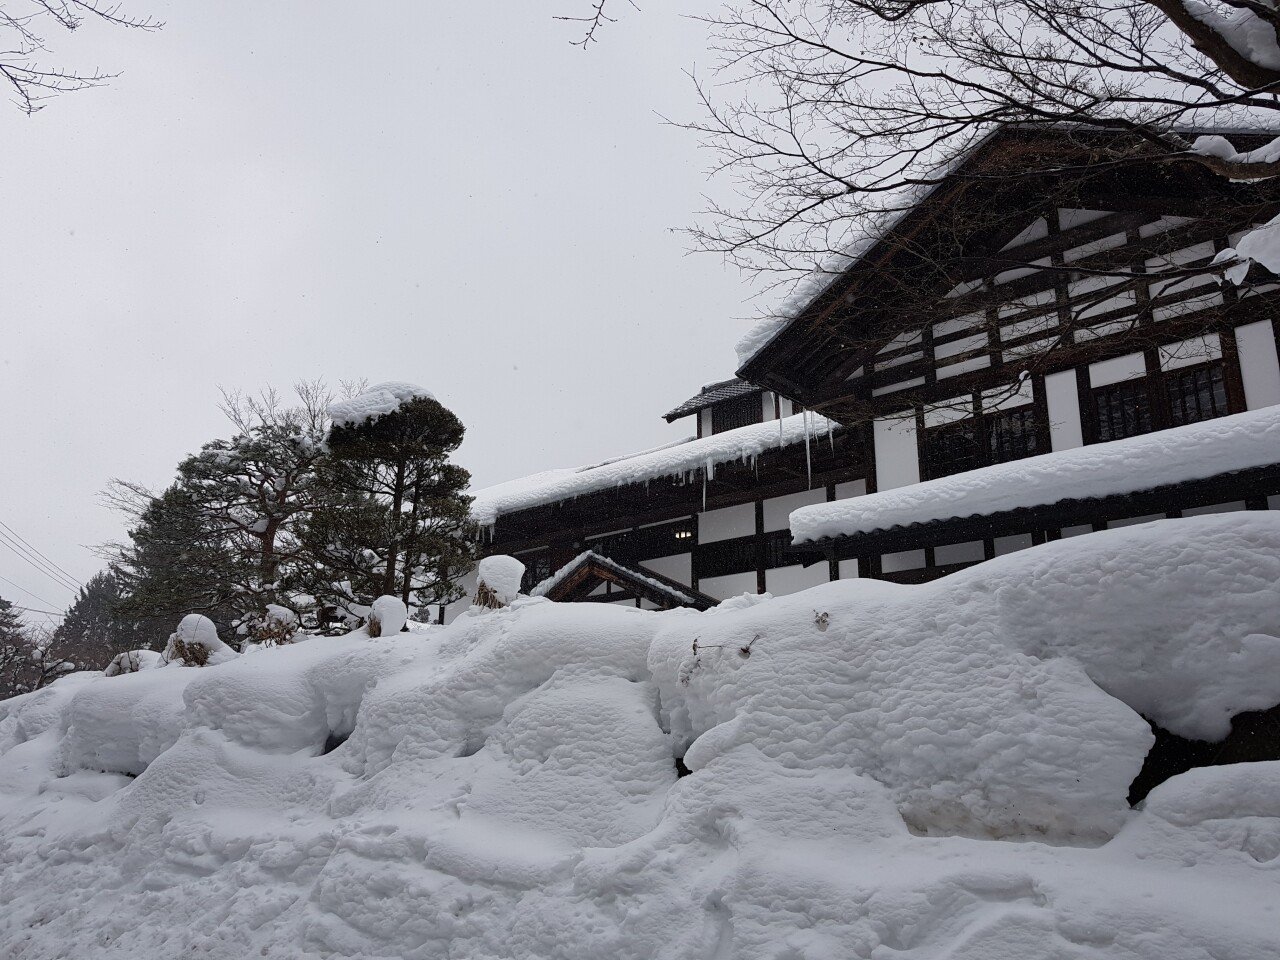 20190131_132022.jpg 눈으로 덮인 겨울 니가타&나가노 여행기(2) (스압?)